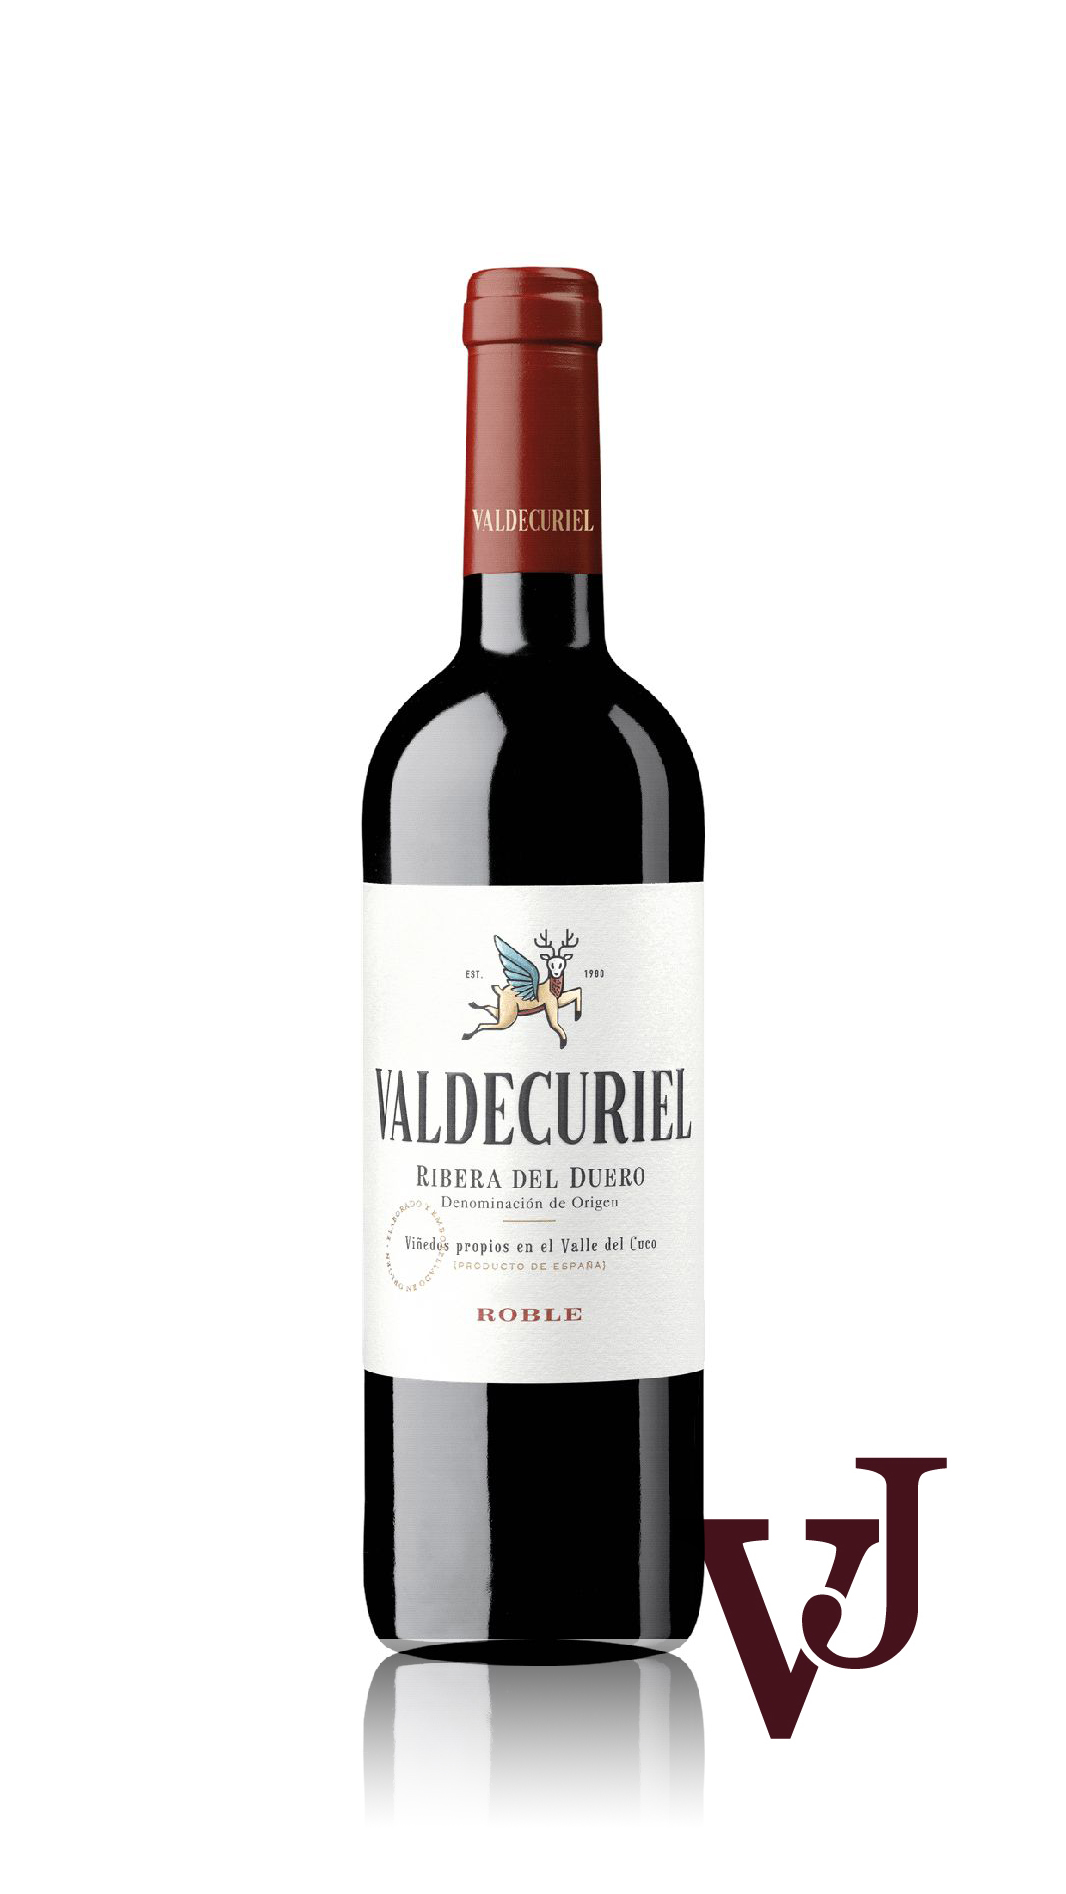 Rött Vin - Valdecuriel artikel nummer 5221801 från producenten Bodegas Muriel från området Spanien